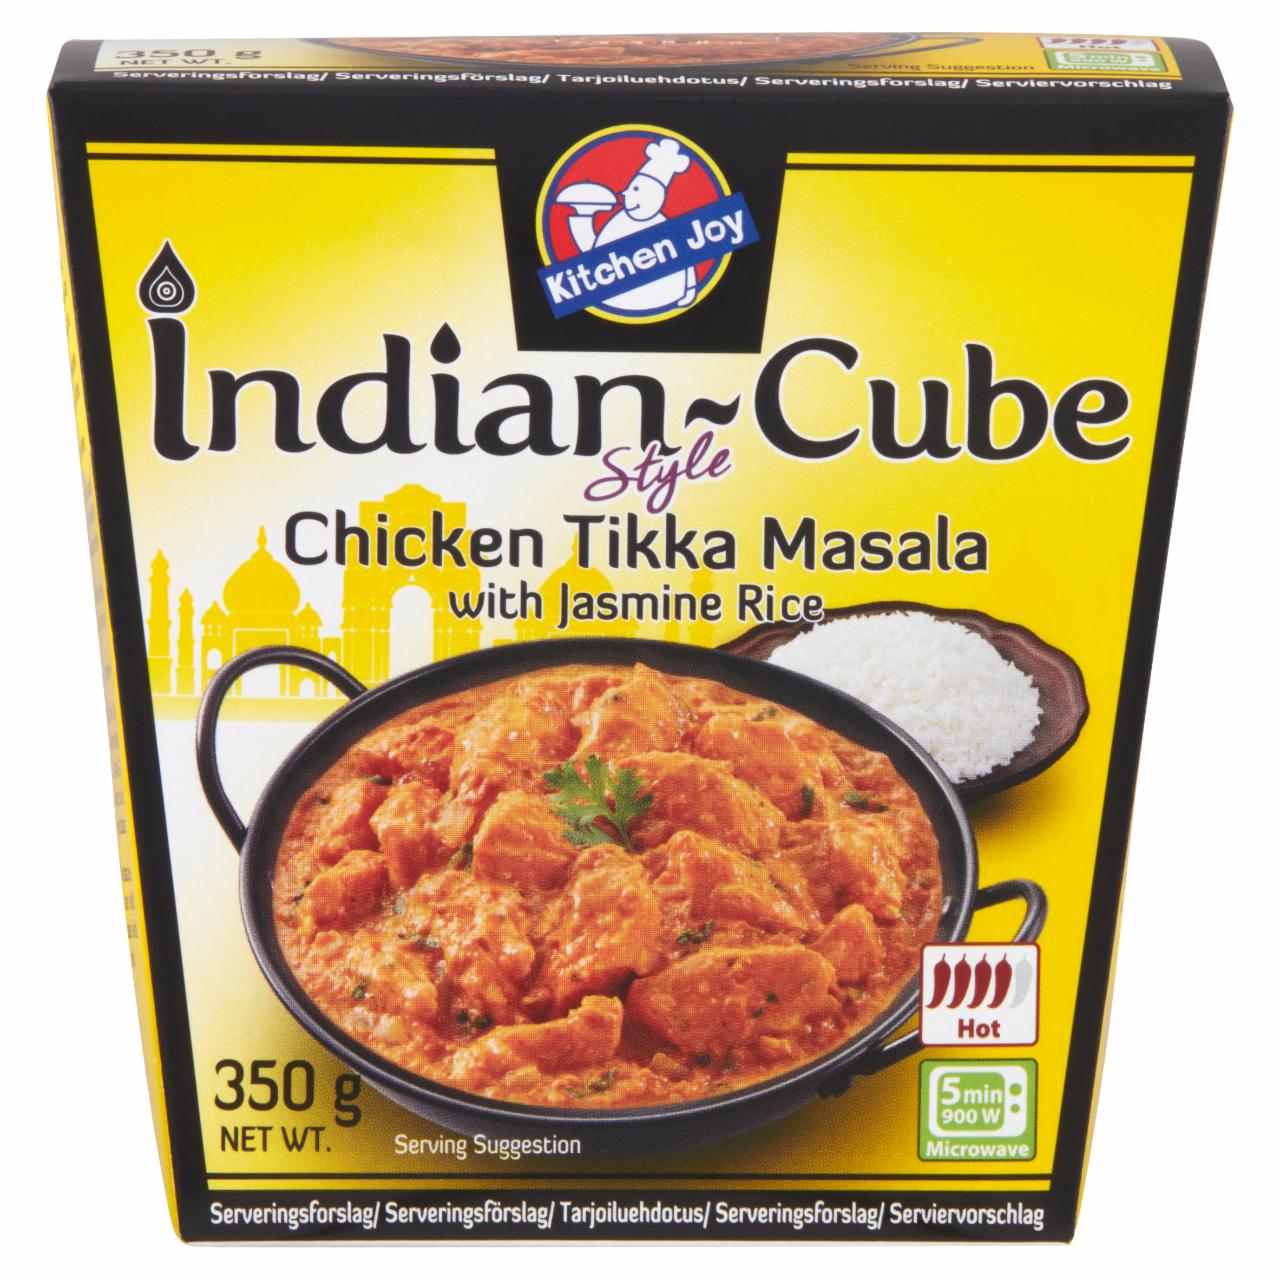 Photo - Kitchen Joy Indian-Cube Chicken Tikka Masala with Jasmine Rice 350 g